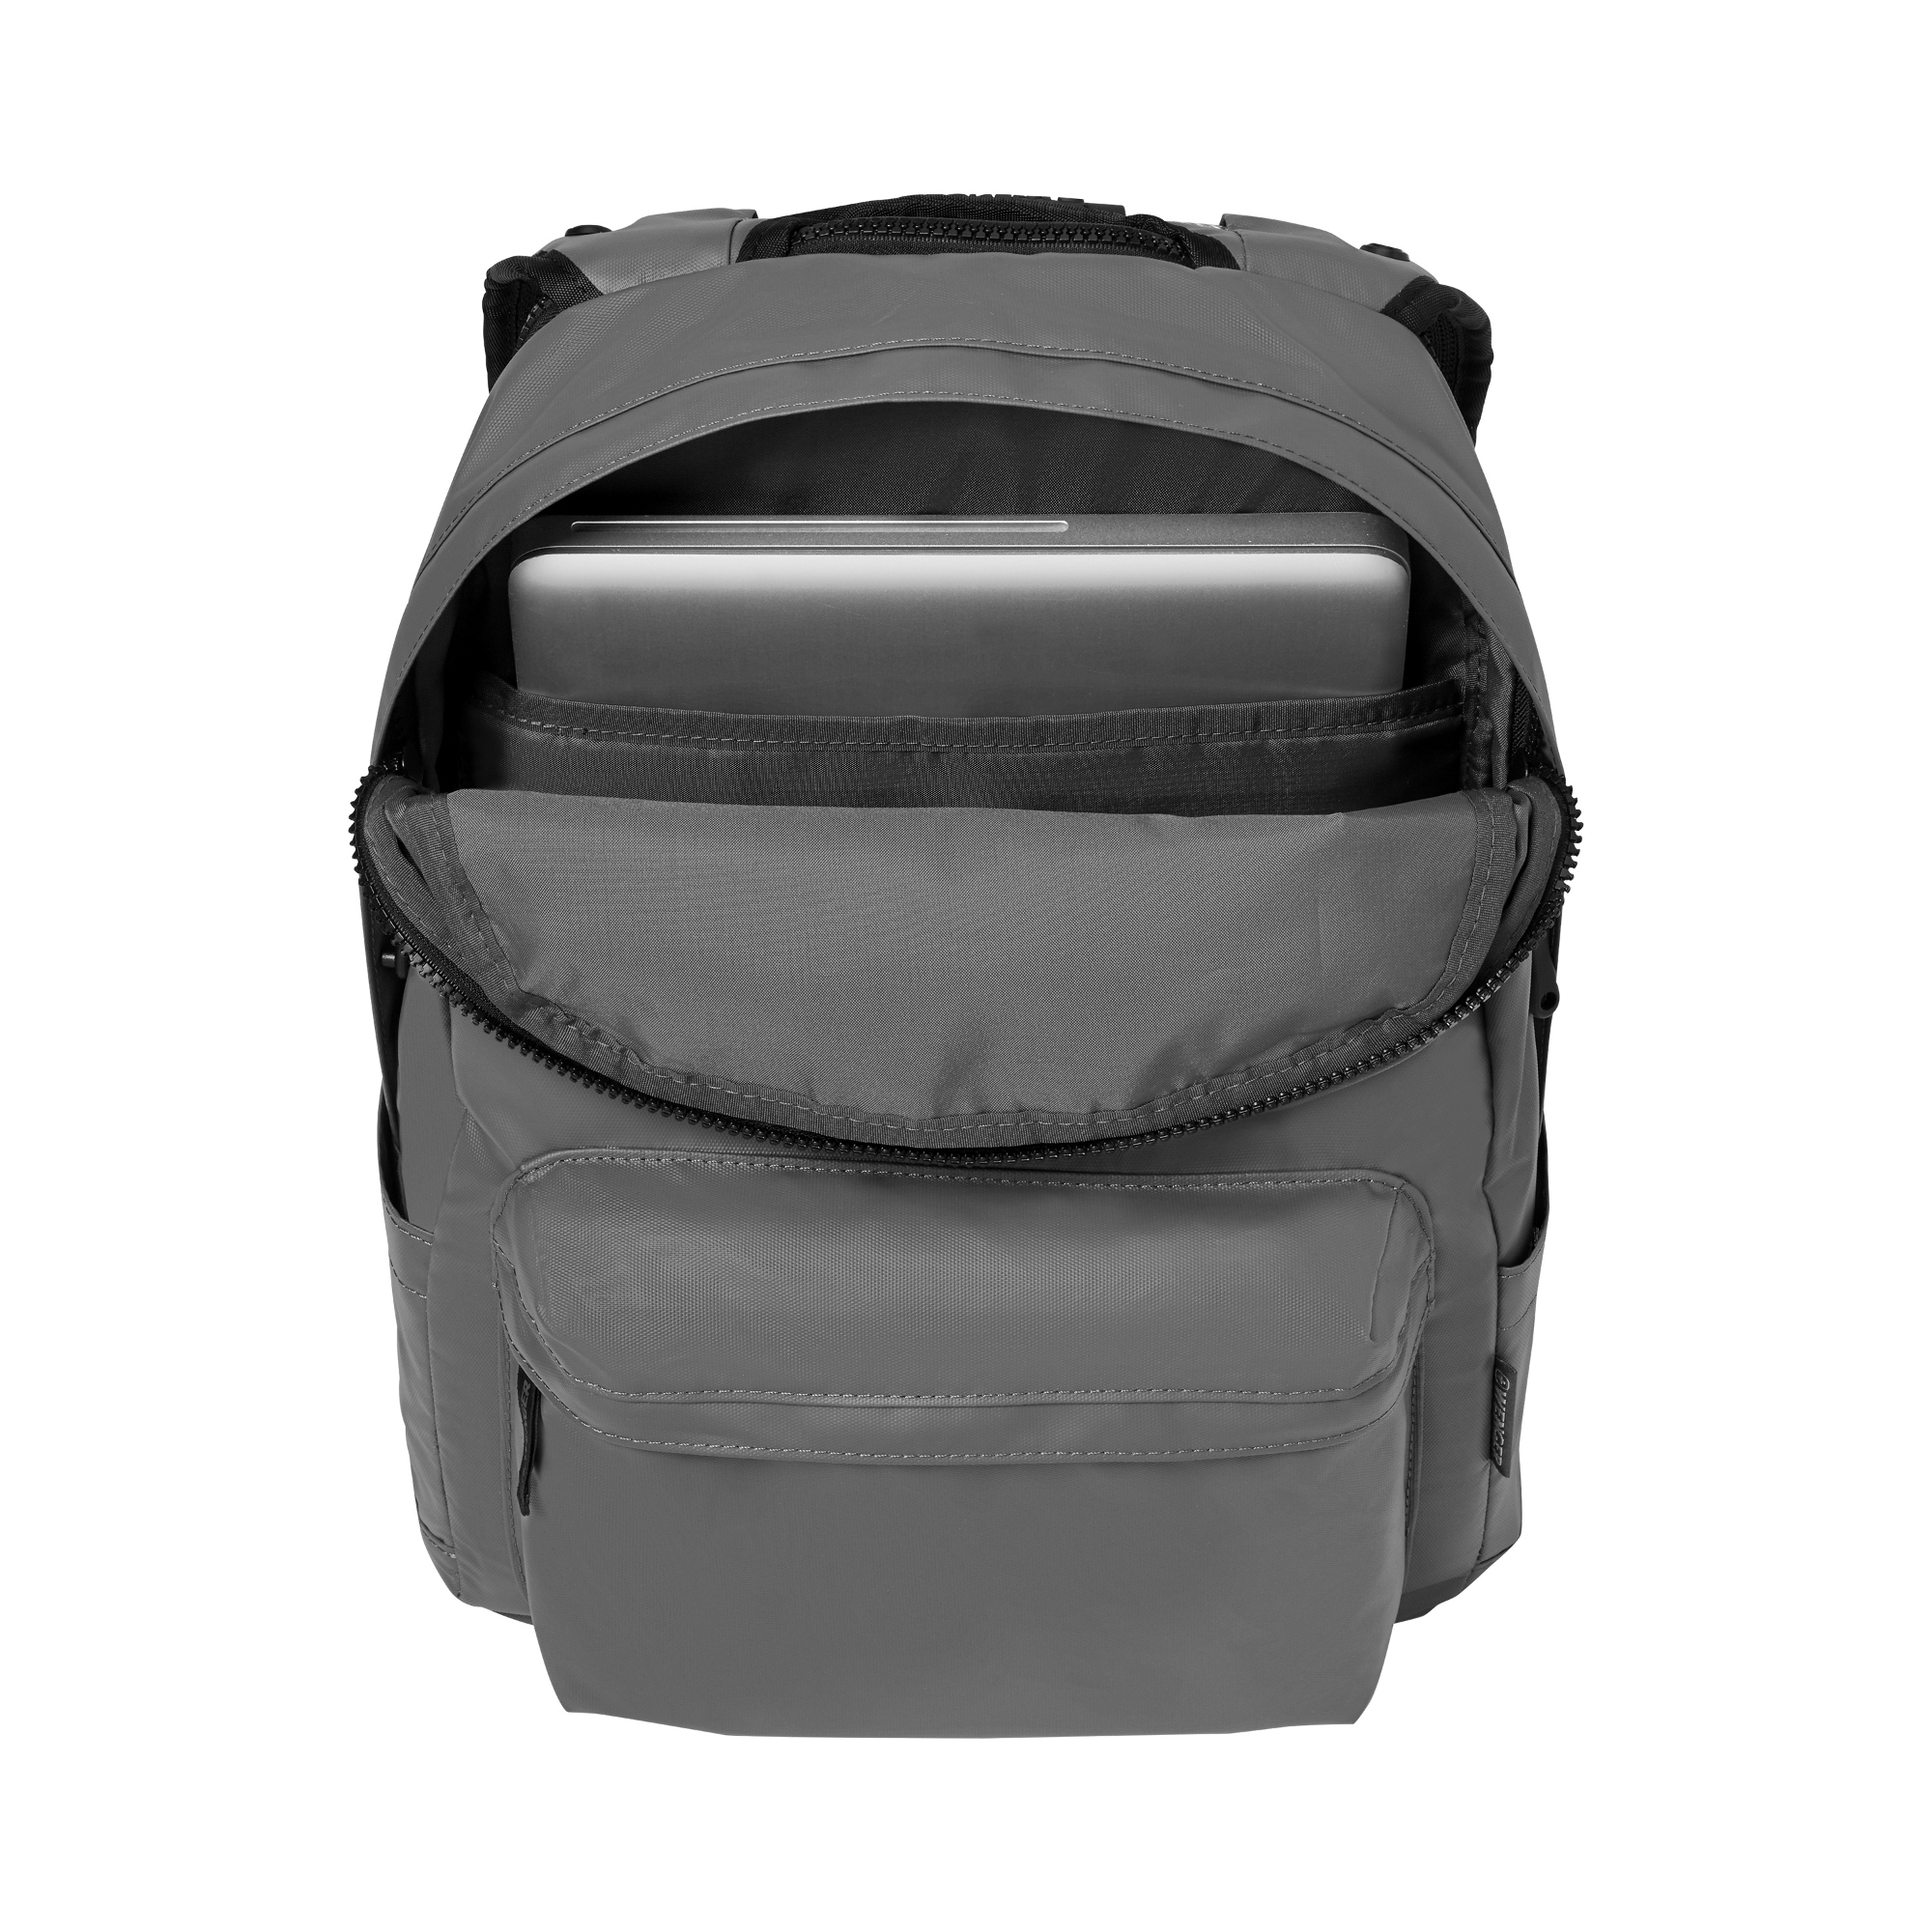 Рюкзак Wenger Photon с водоотталкивающим покрытием серый - фото 4